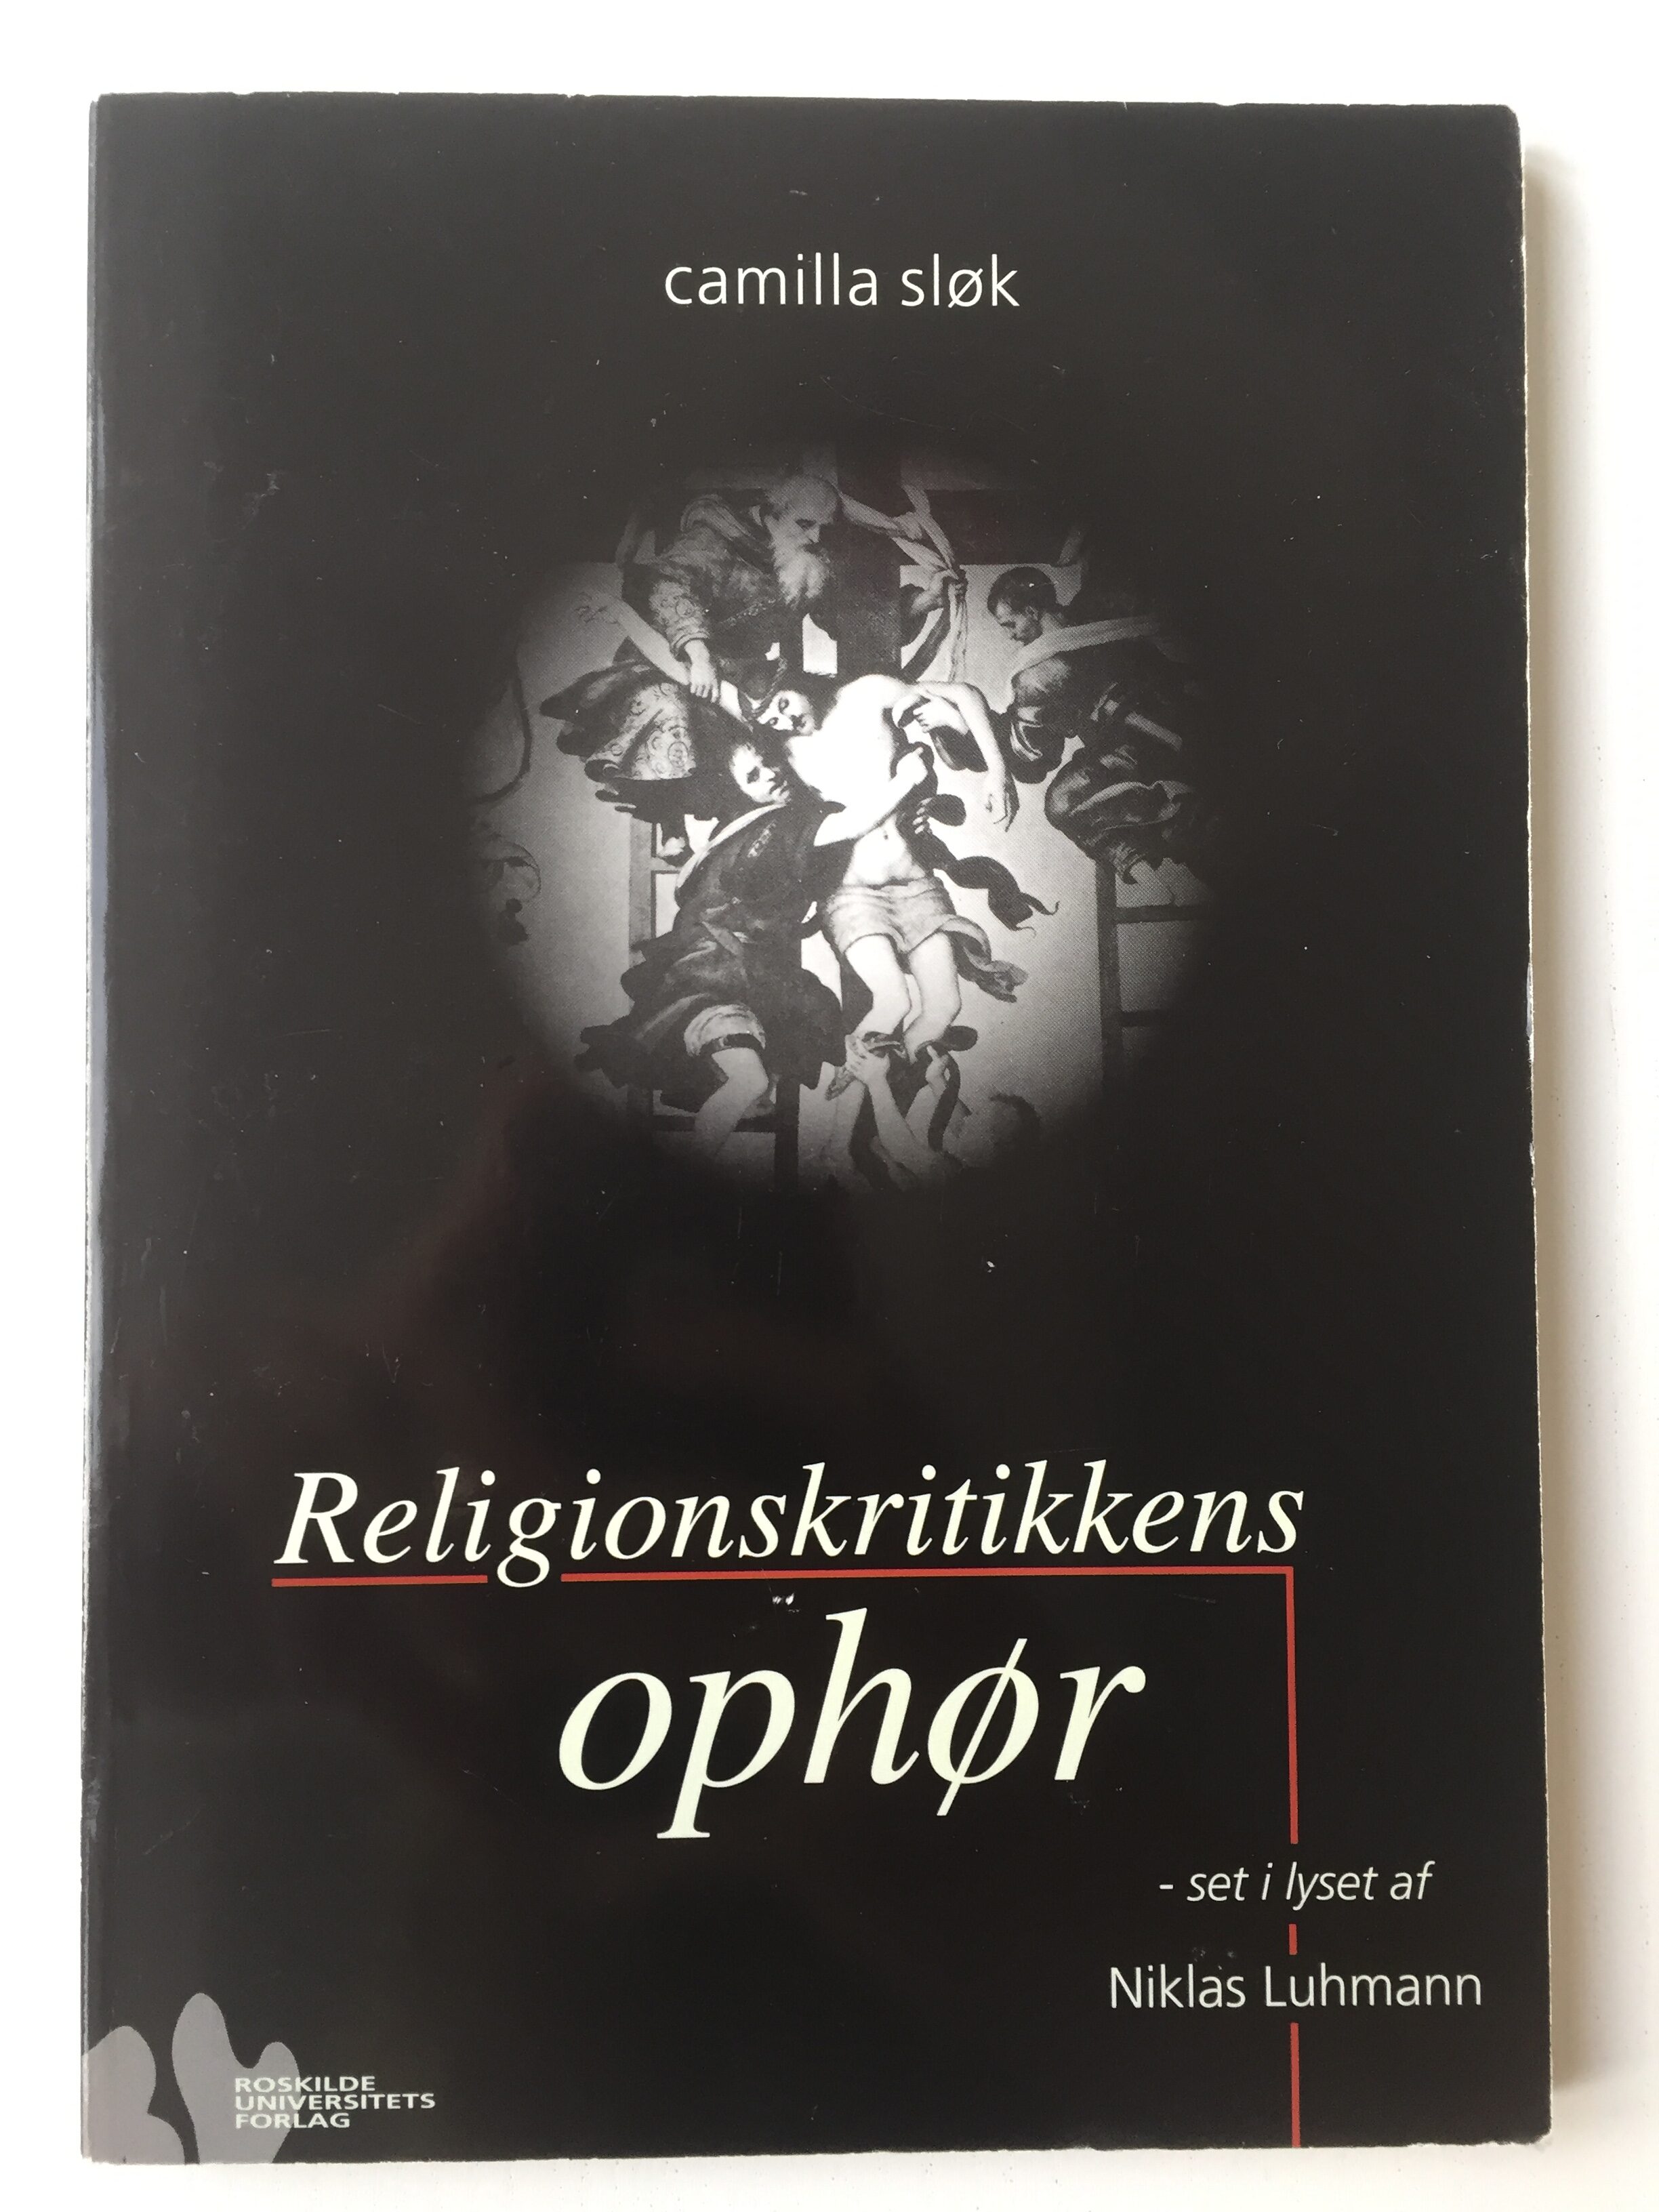 Køb "Religionskritikkens ophør 1999" (forside)